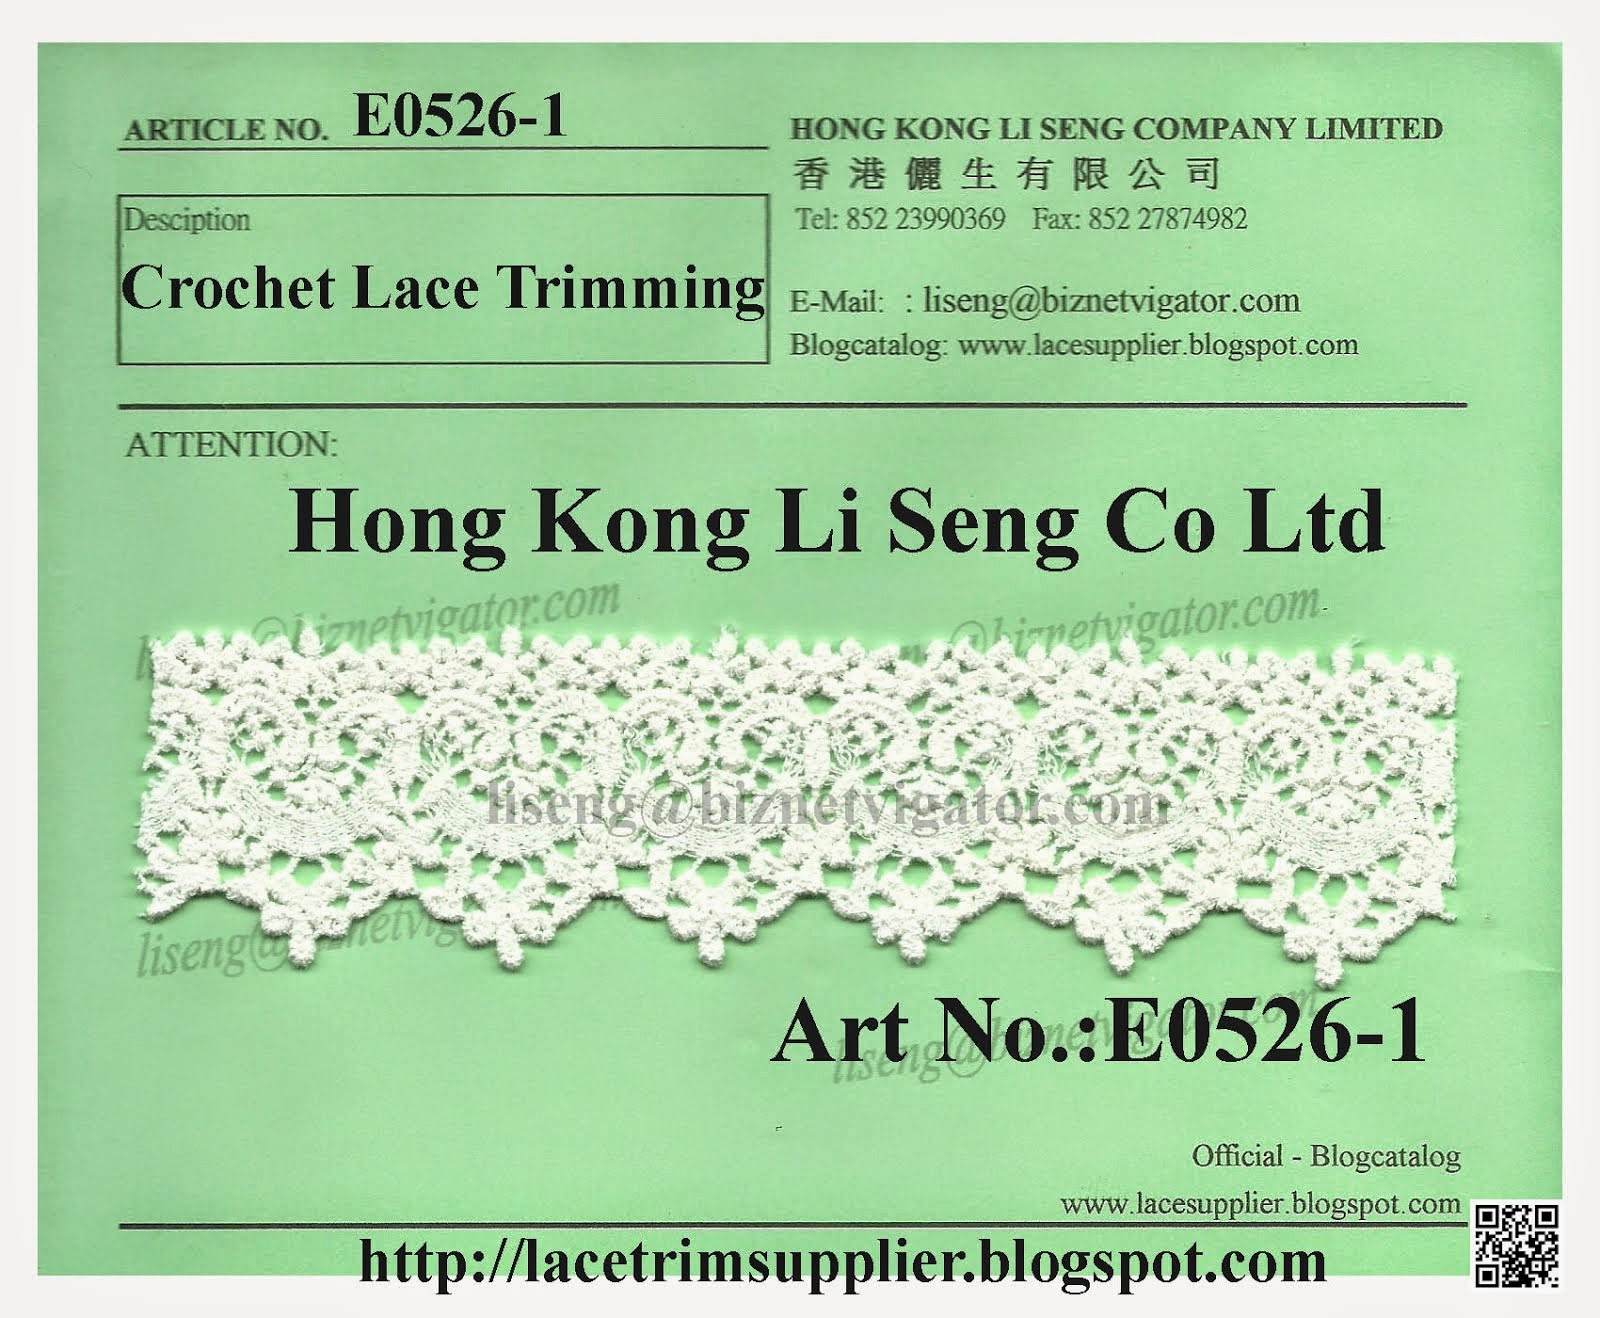 Crochet Lace Trimming Manufacturer and Supplier - Hong Kong Li Seng Co Ltd